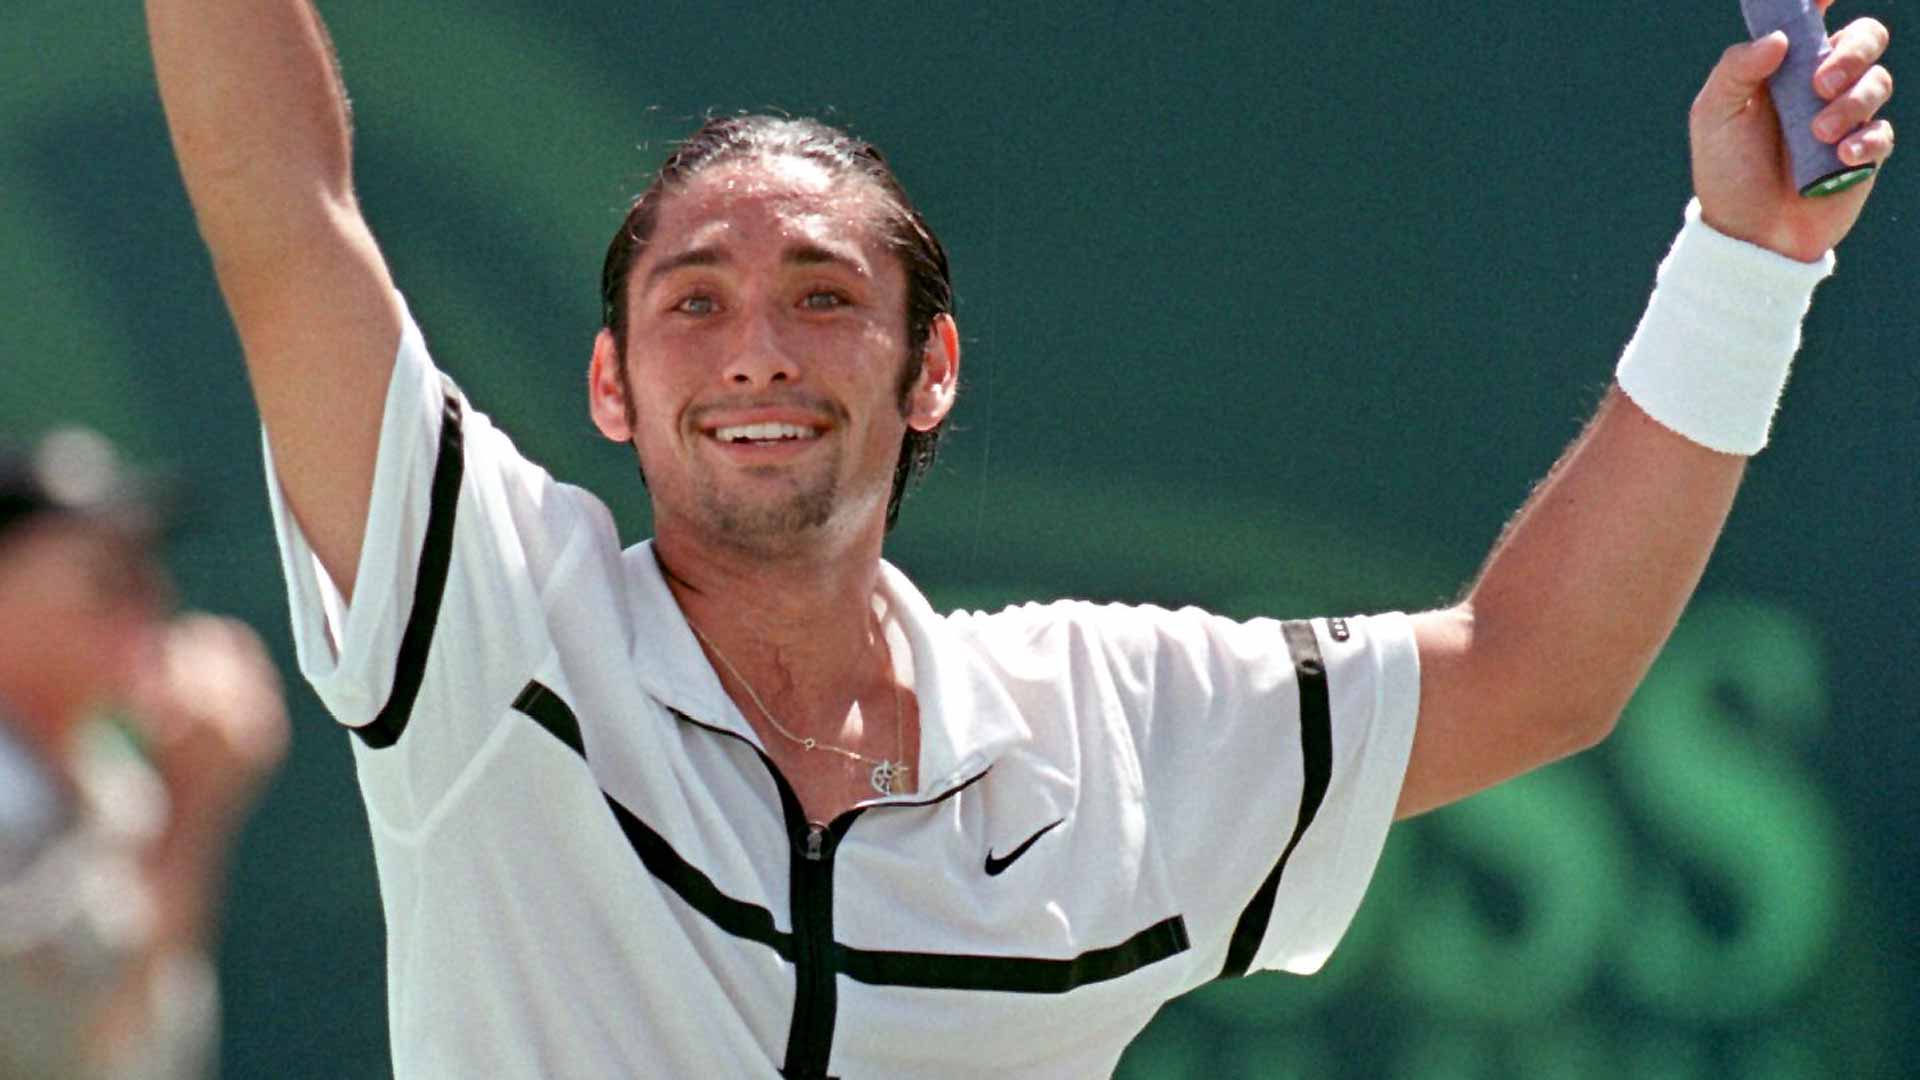 Rios celebrates winning the 1998 Miami title